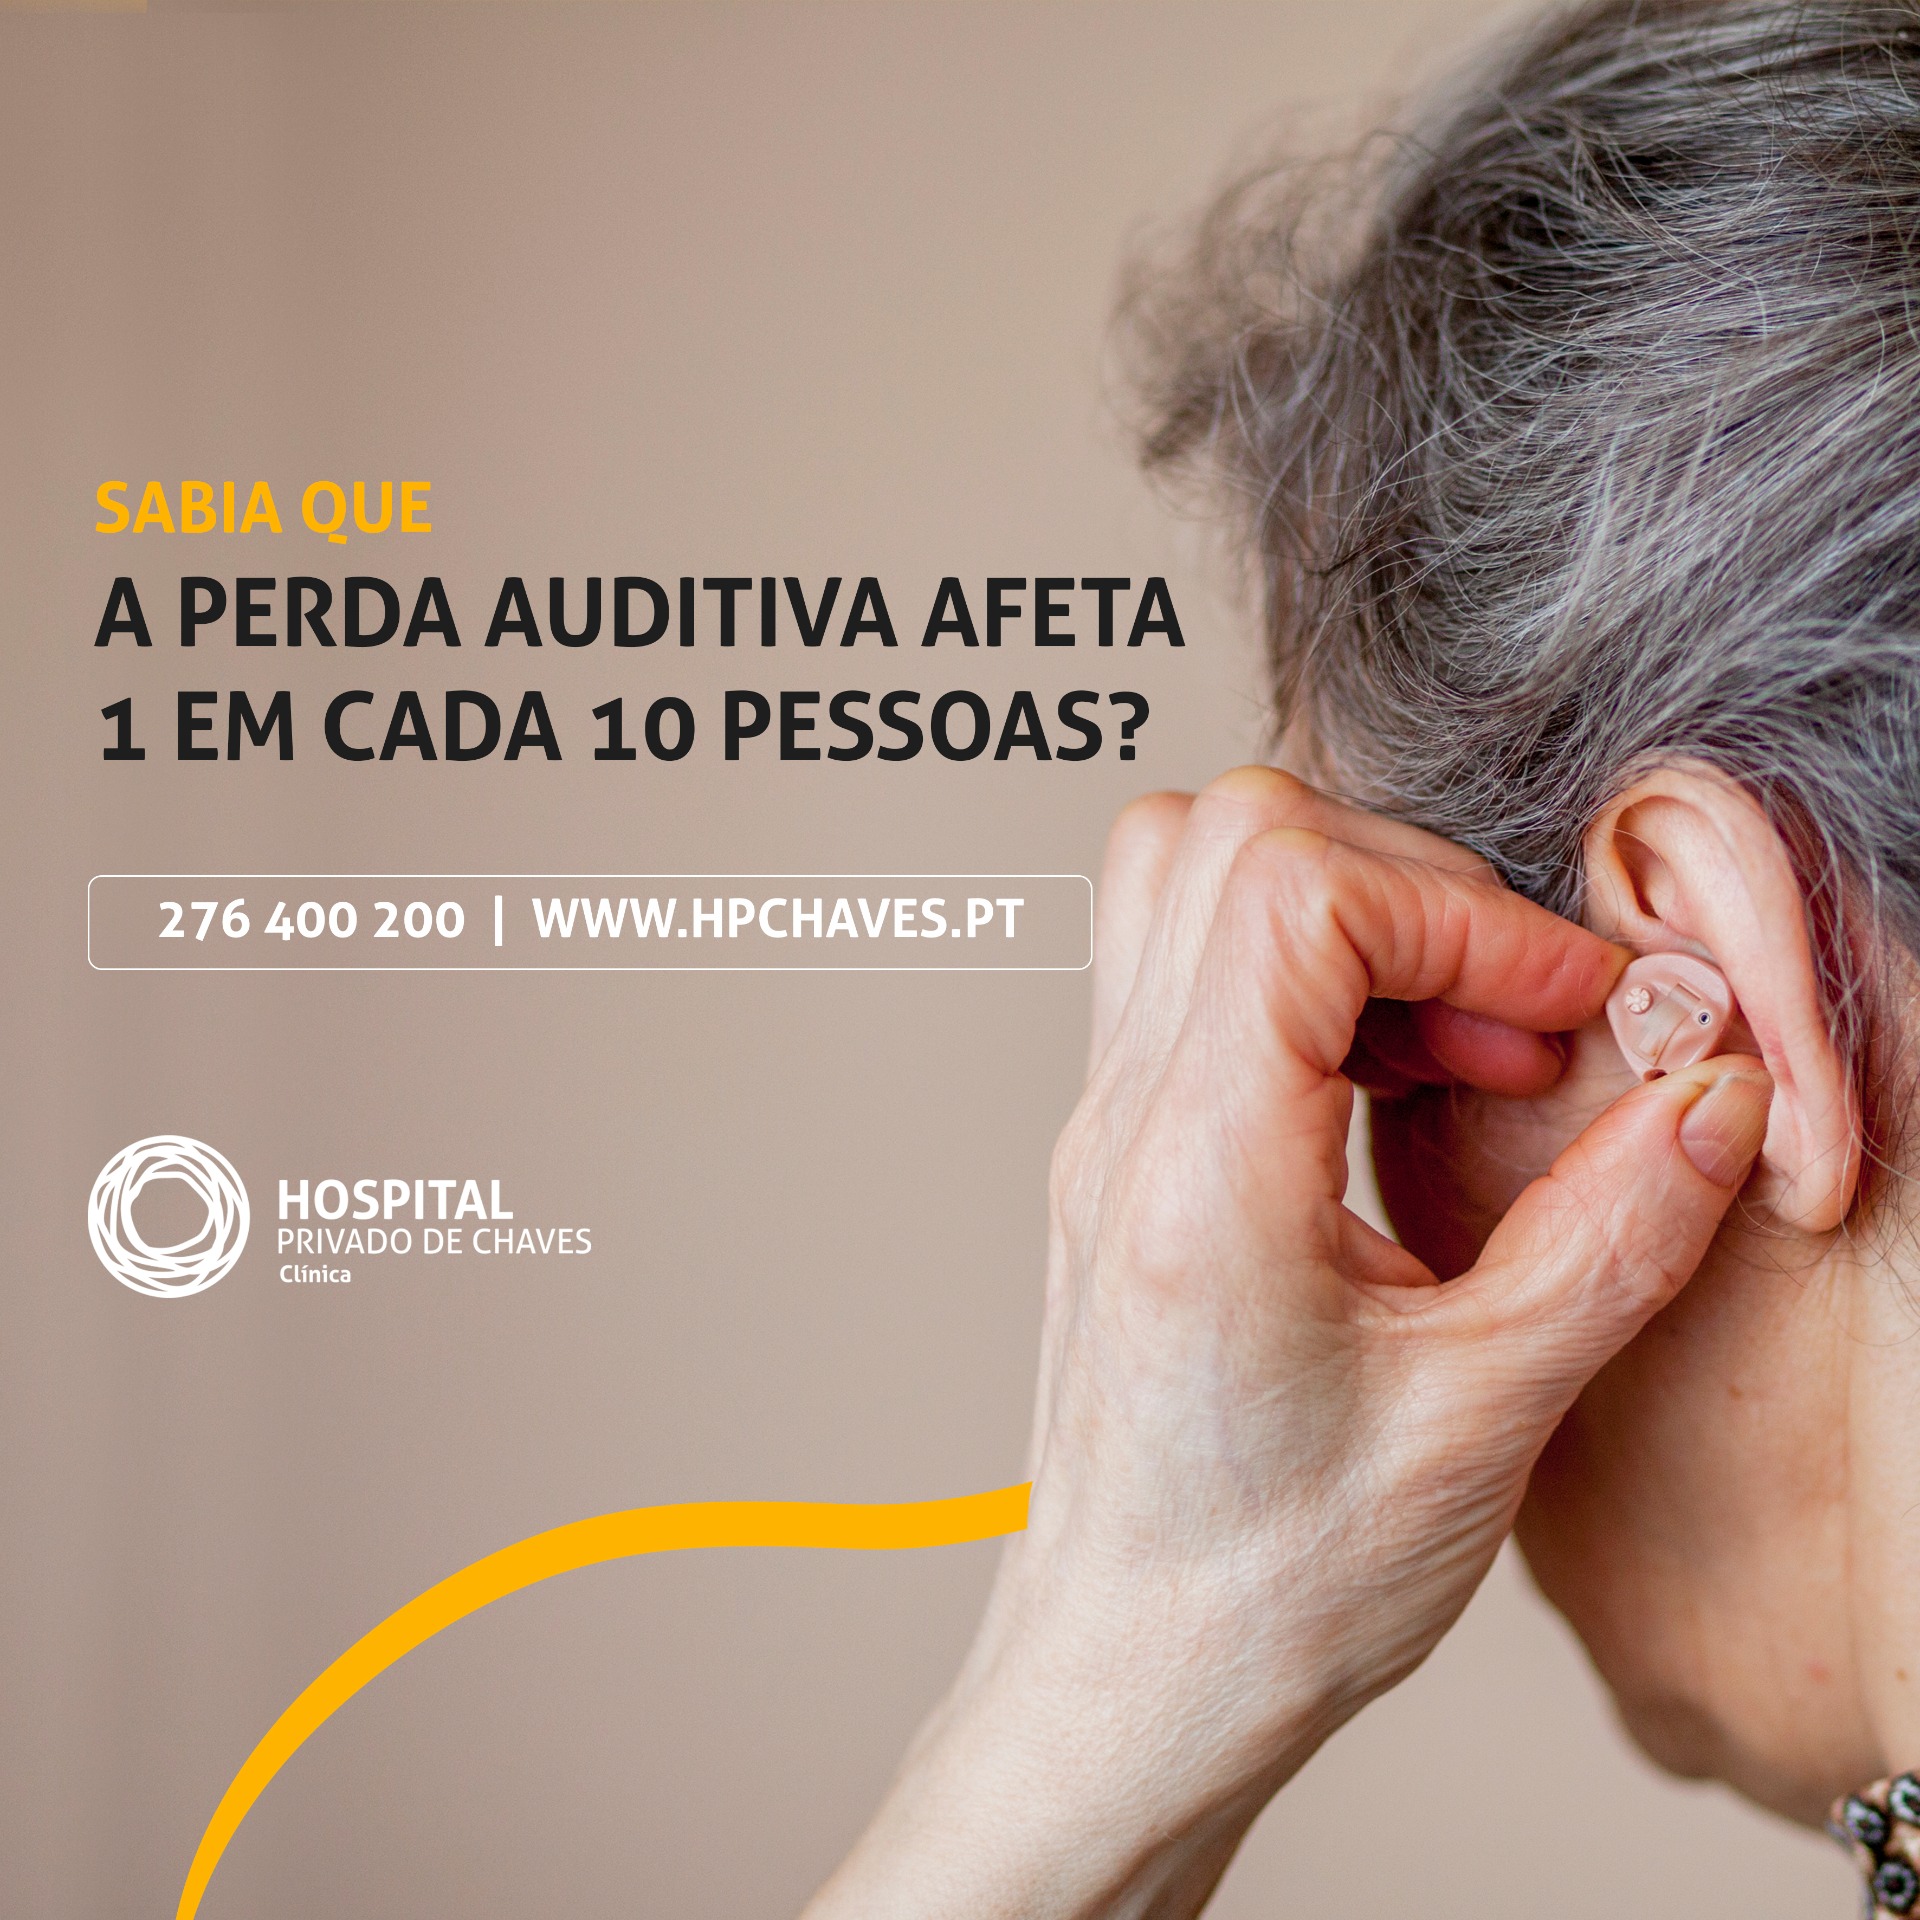 Sabia que a perda auditiva afeta 1 em cada 10 pessoas?